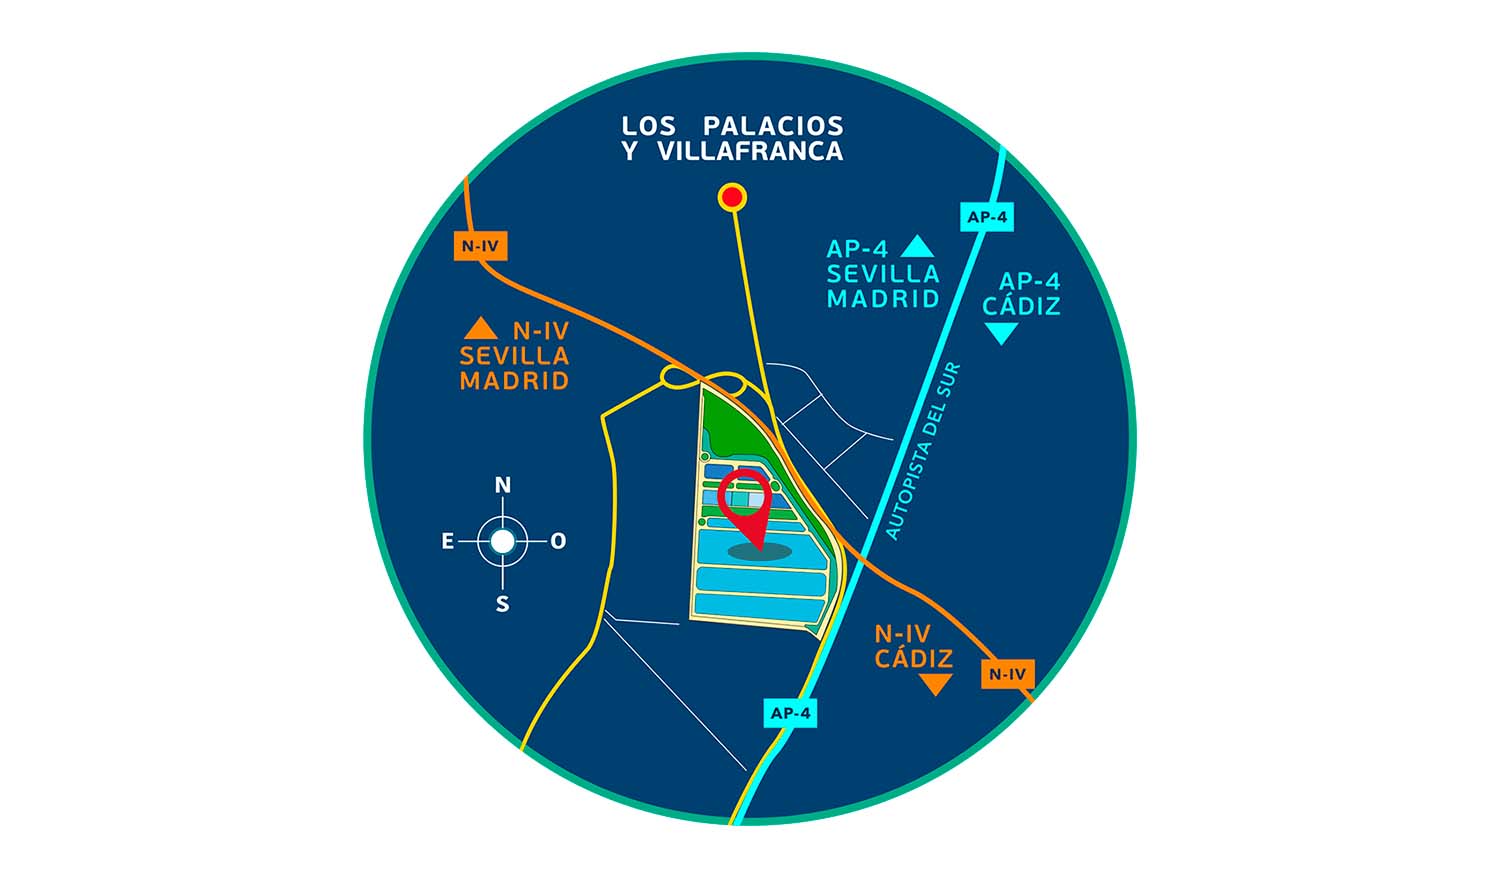 Parque logístico Sevilla ubicación estrategica